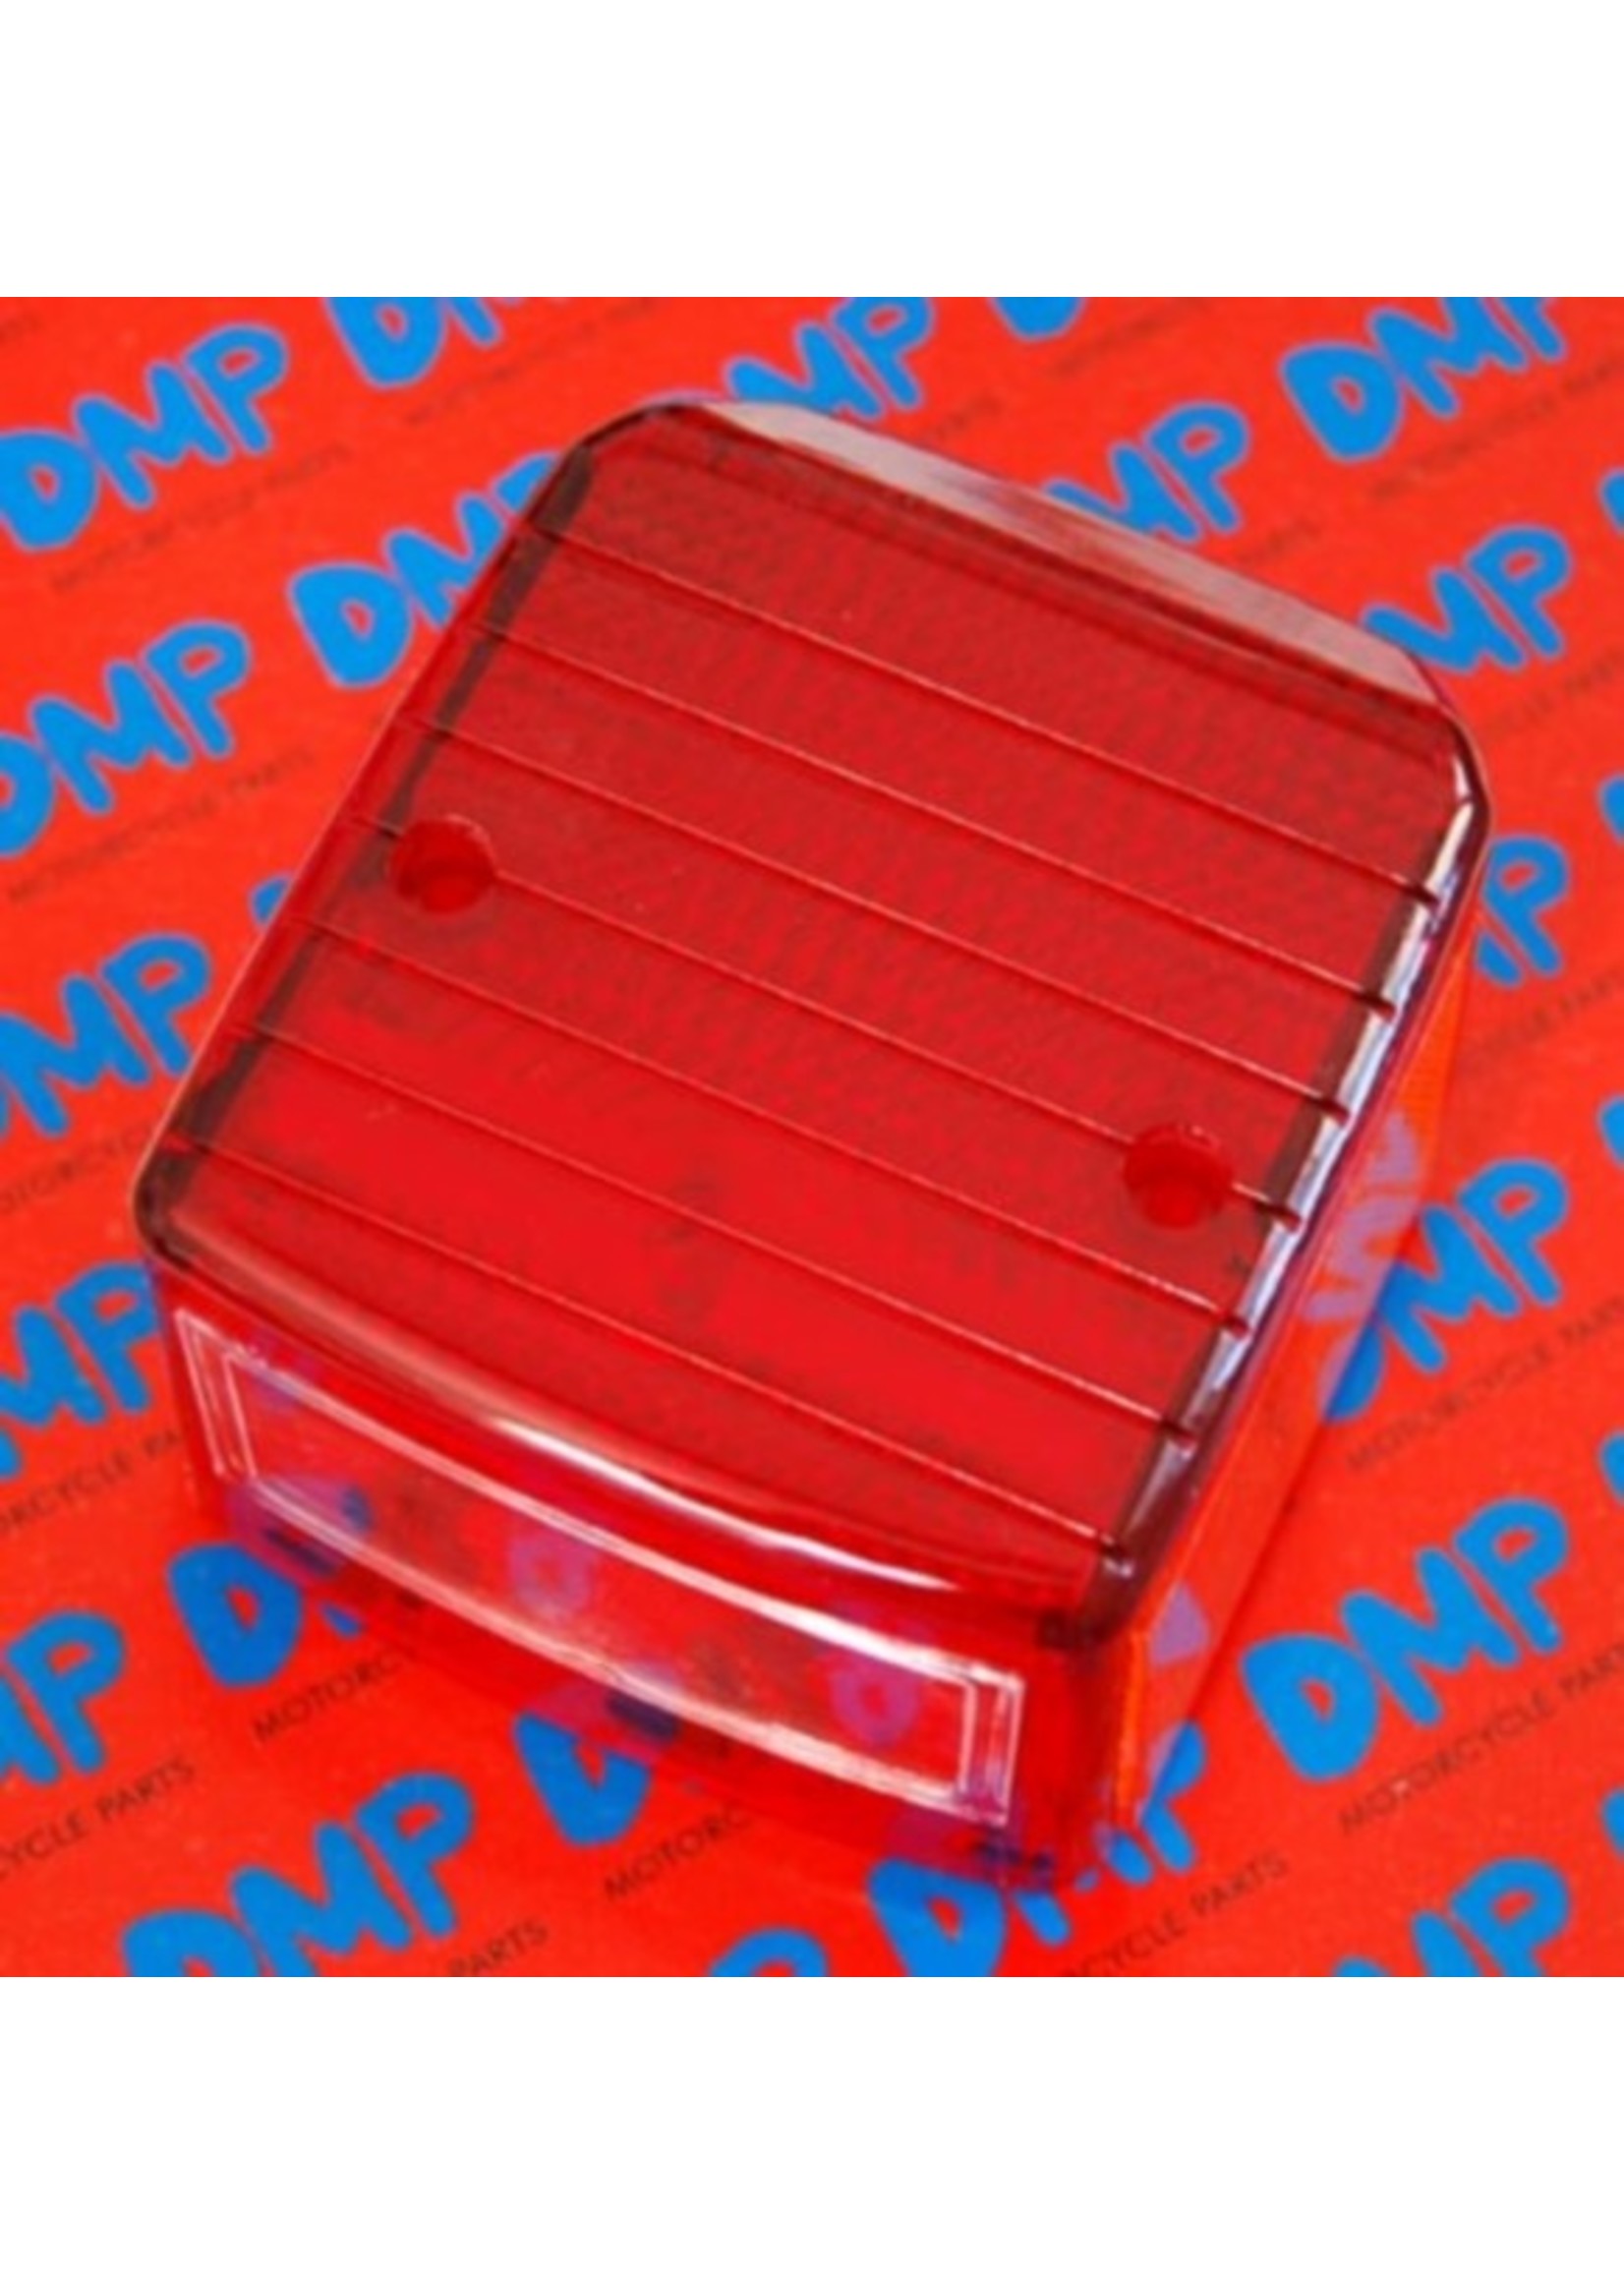 Piaggio achterlichtglas maxi/pearly/tomos rood DMP